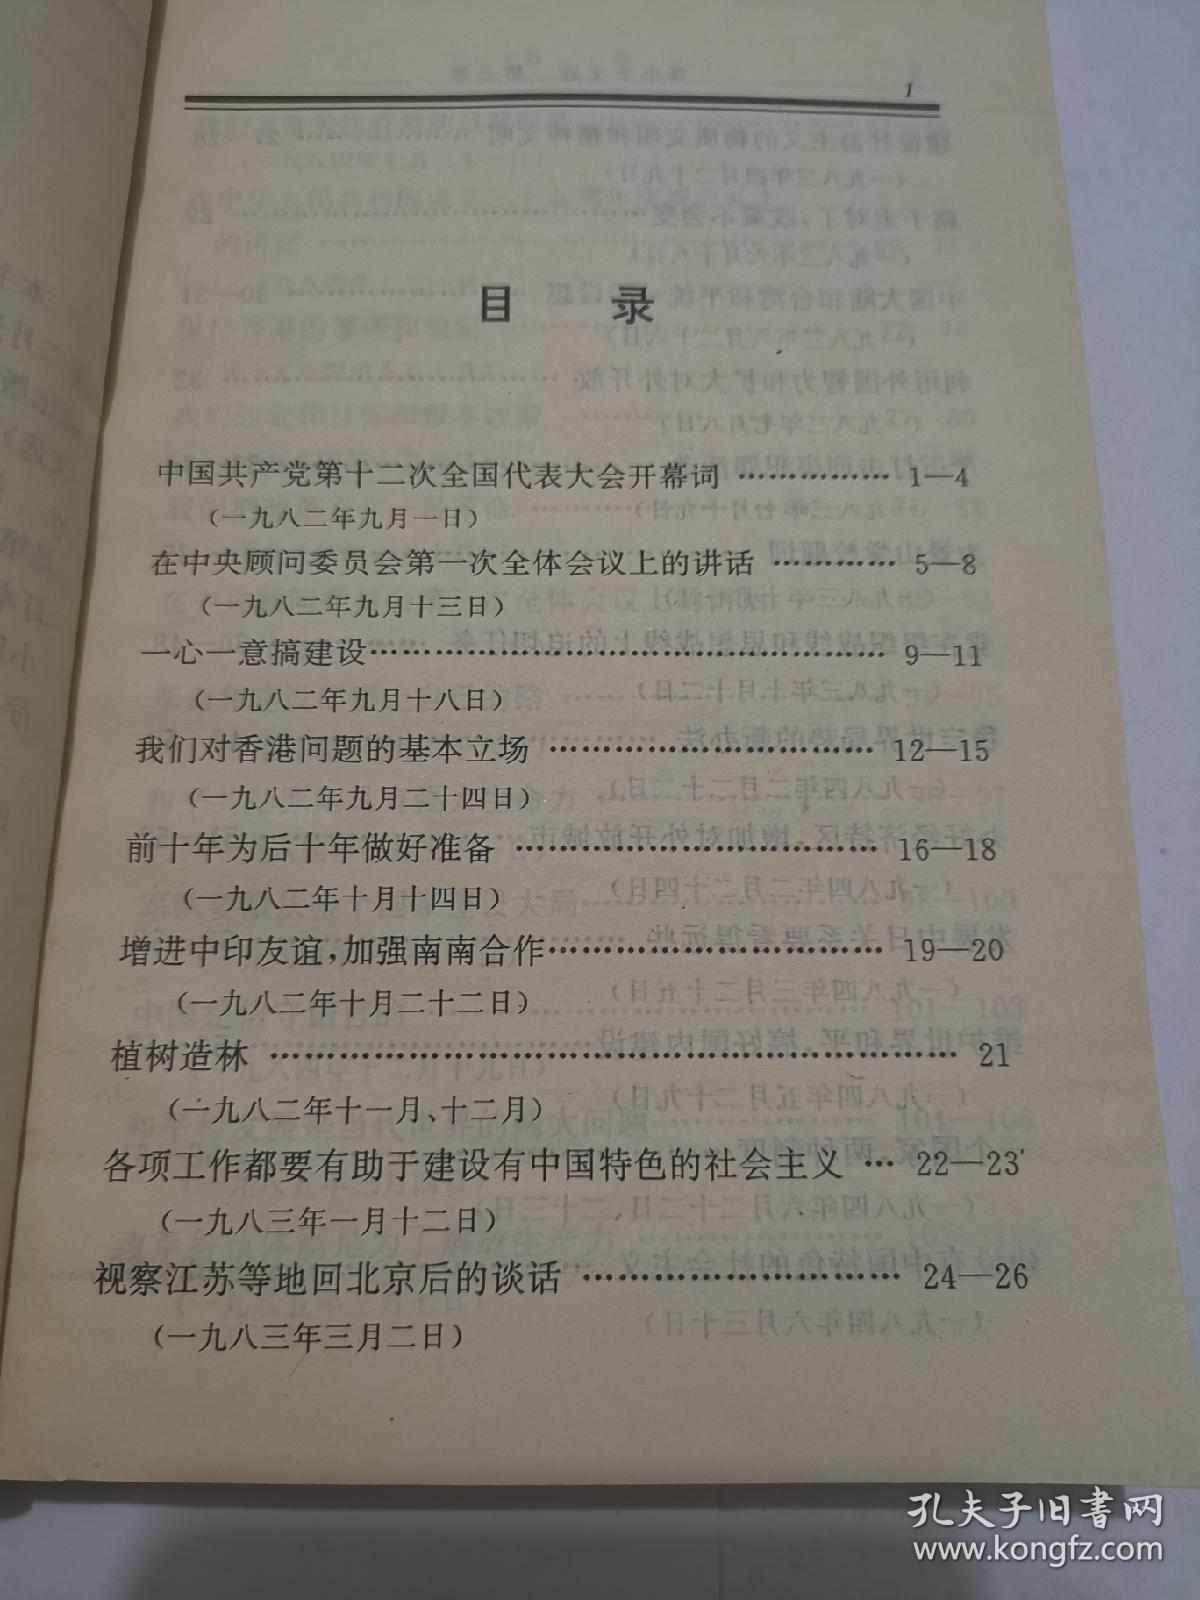 邓小平文选（第三卷）（1993年10月第一版第一次印刷）